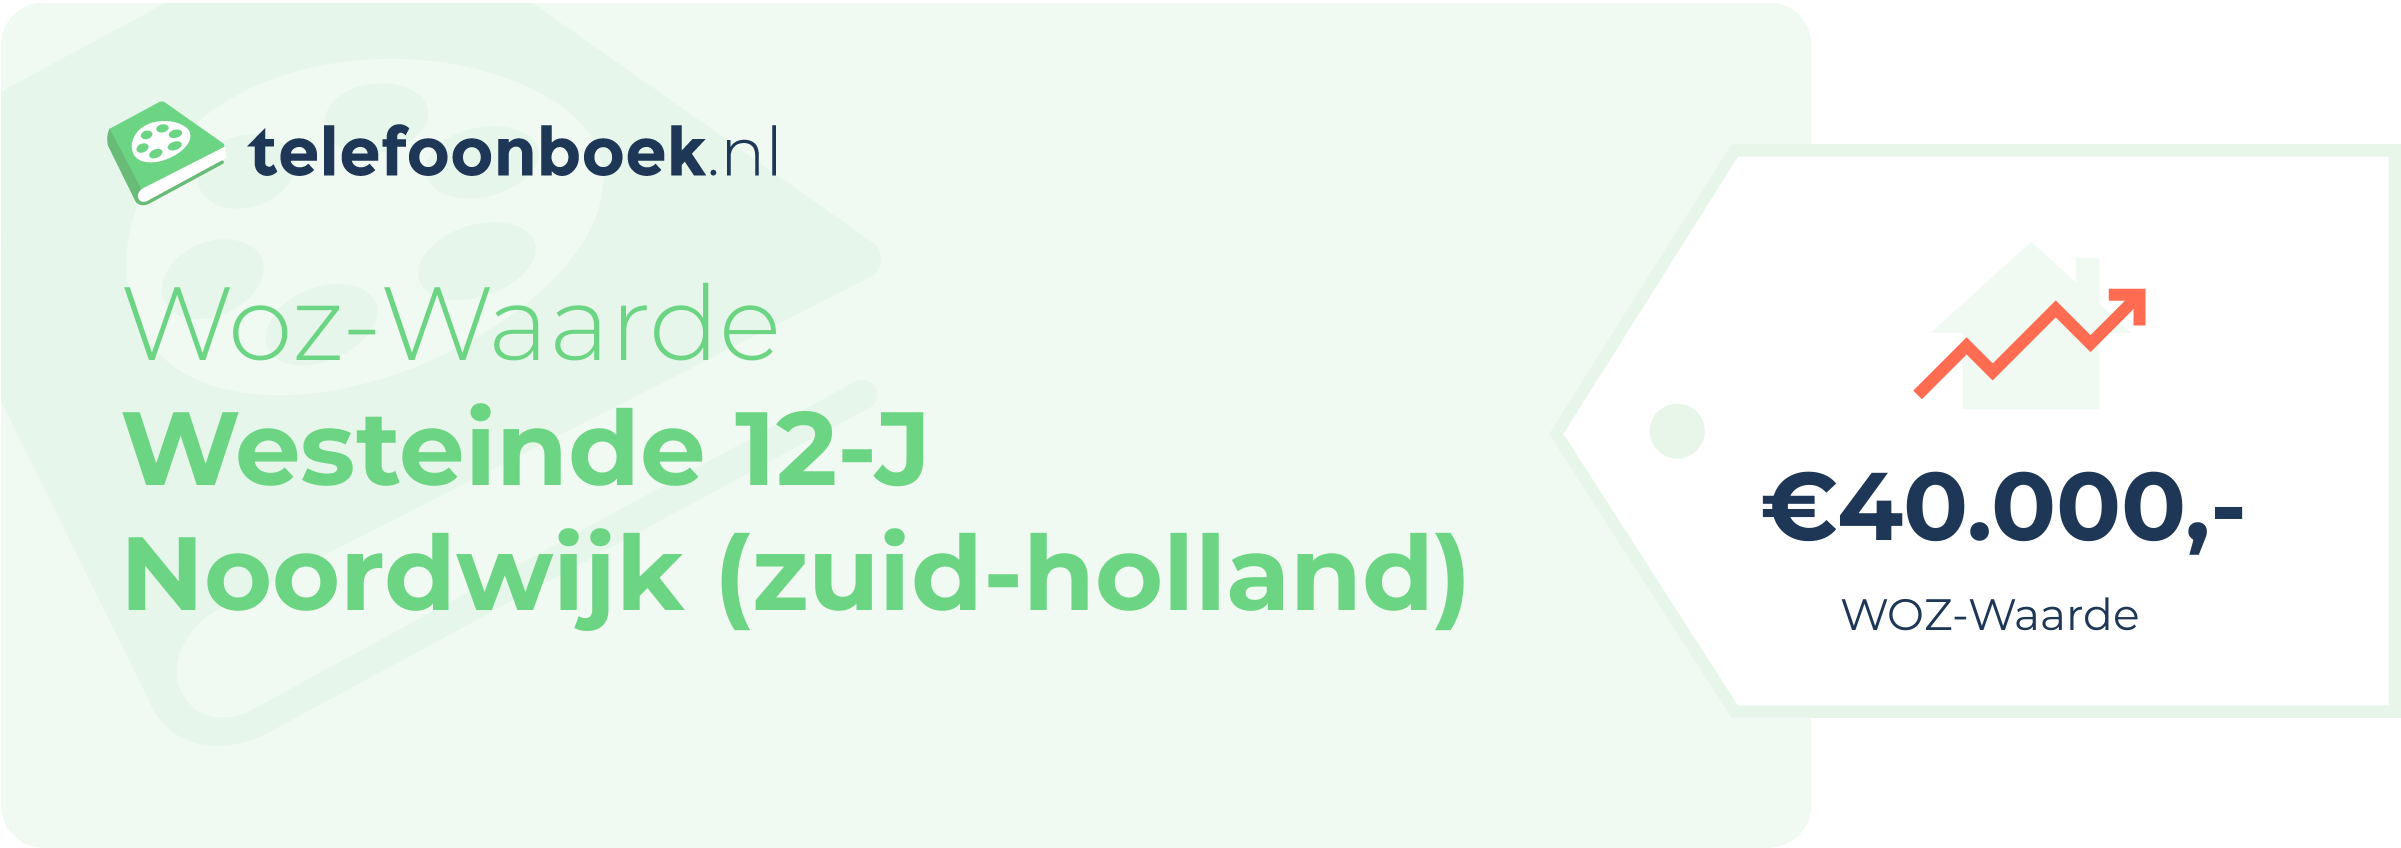 WOZ-waarde Westeinde 12-J Noordwijk (Zuid-Holland)